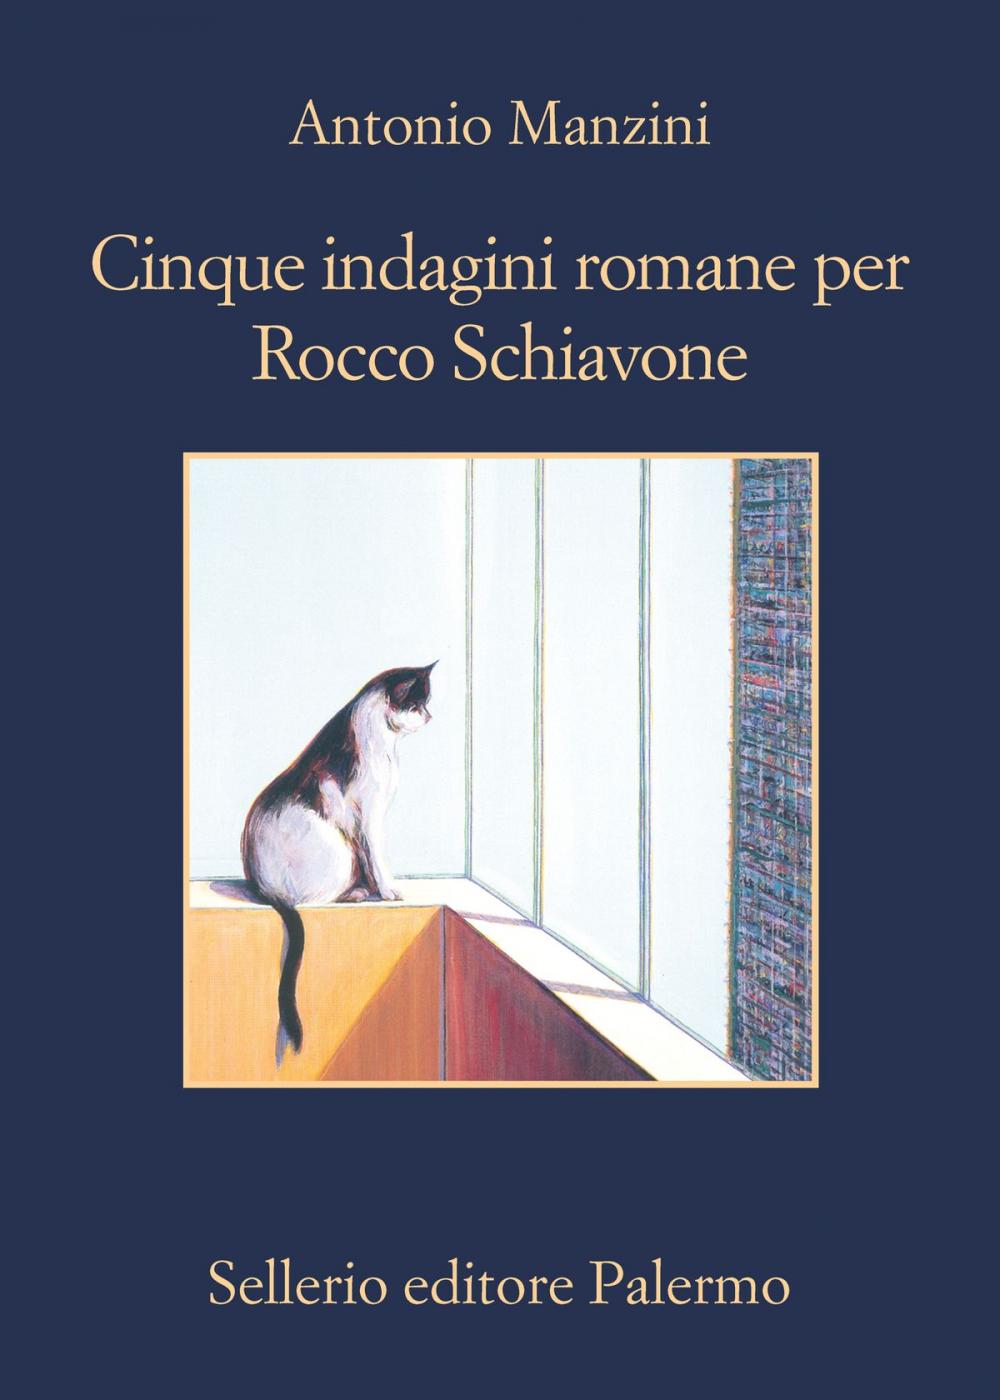 Big bigCover of Cinque indagini romane per Rocco Schiavone